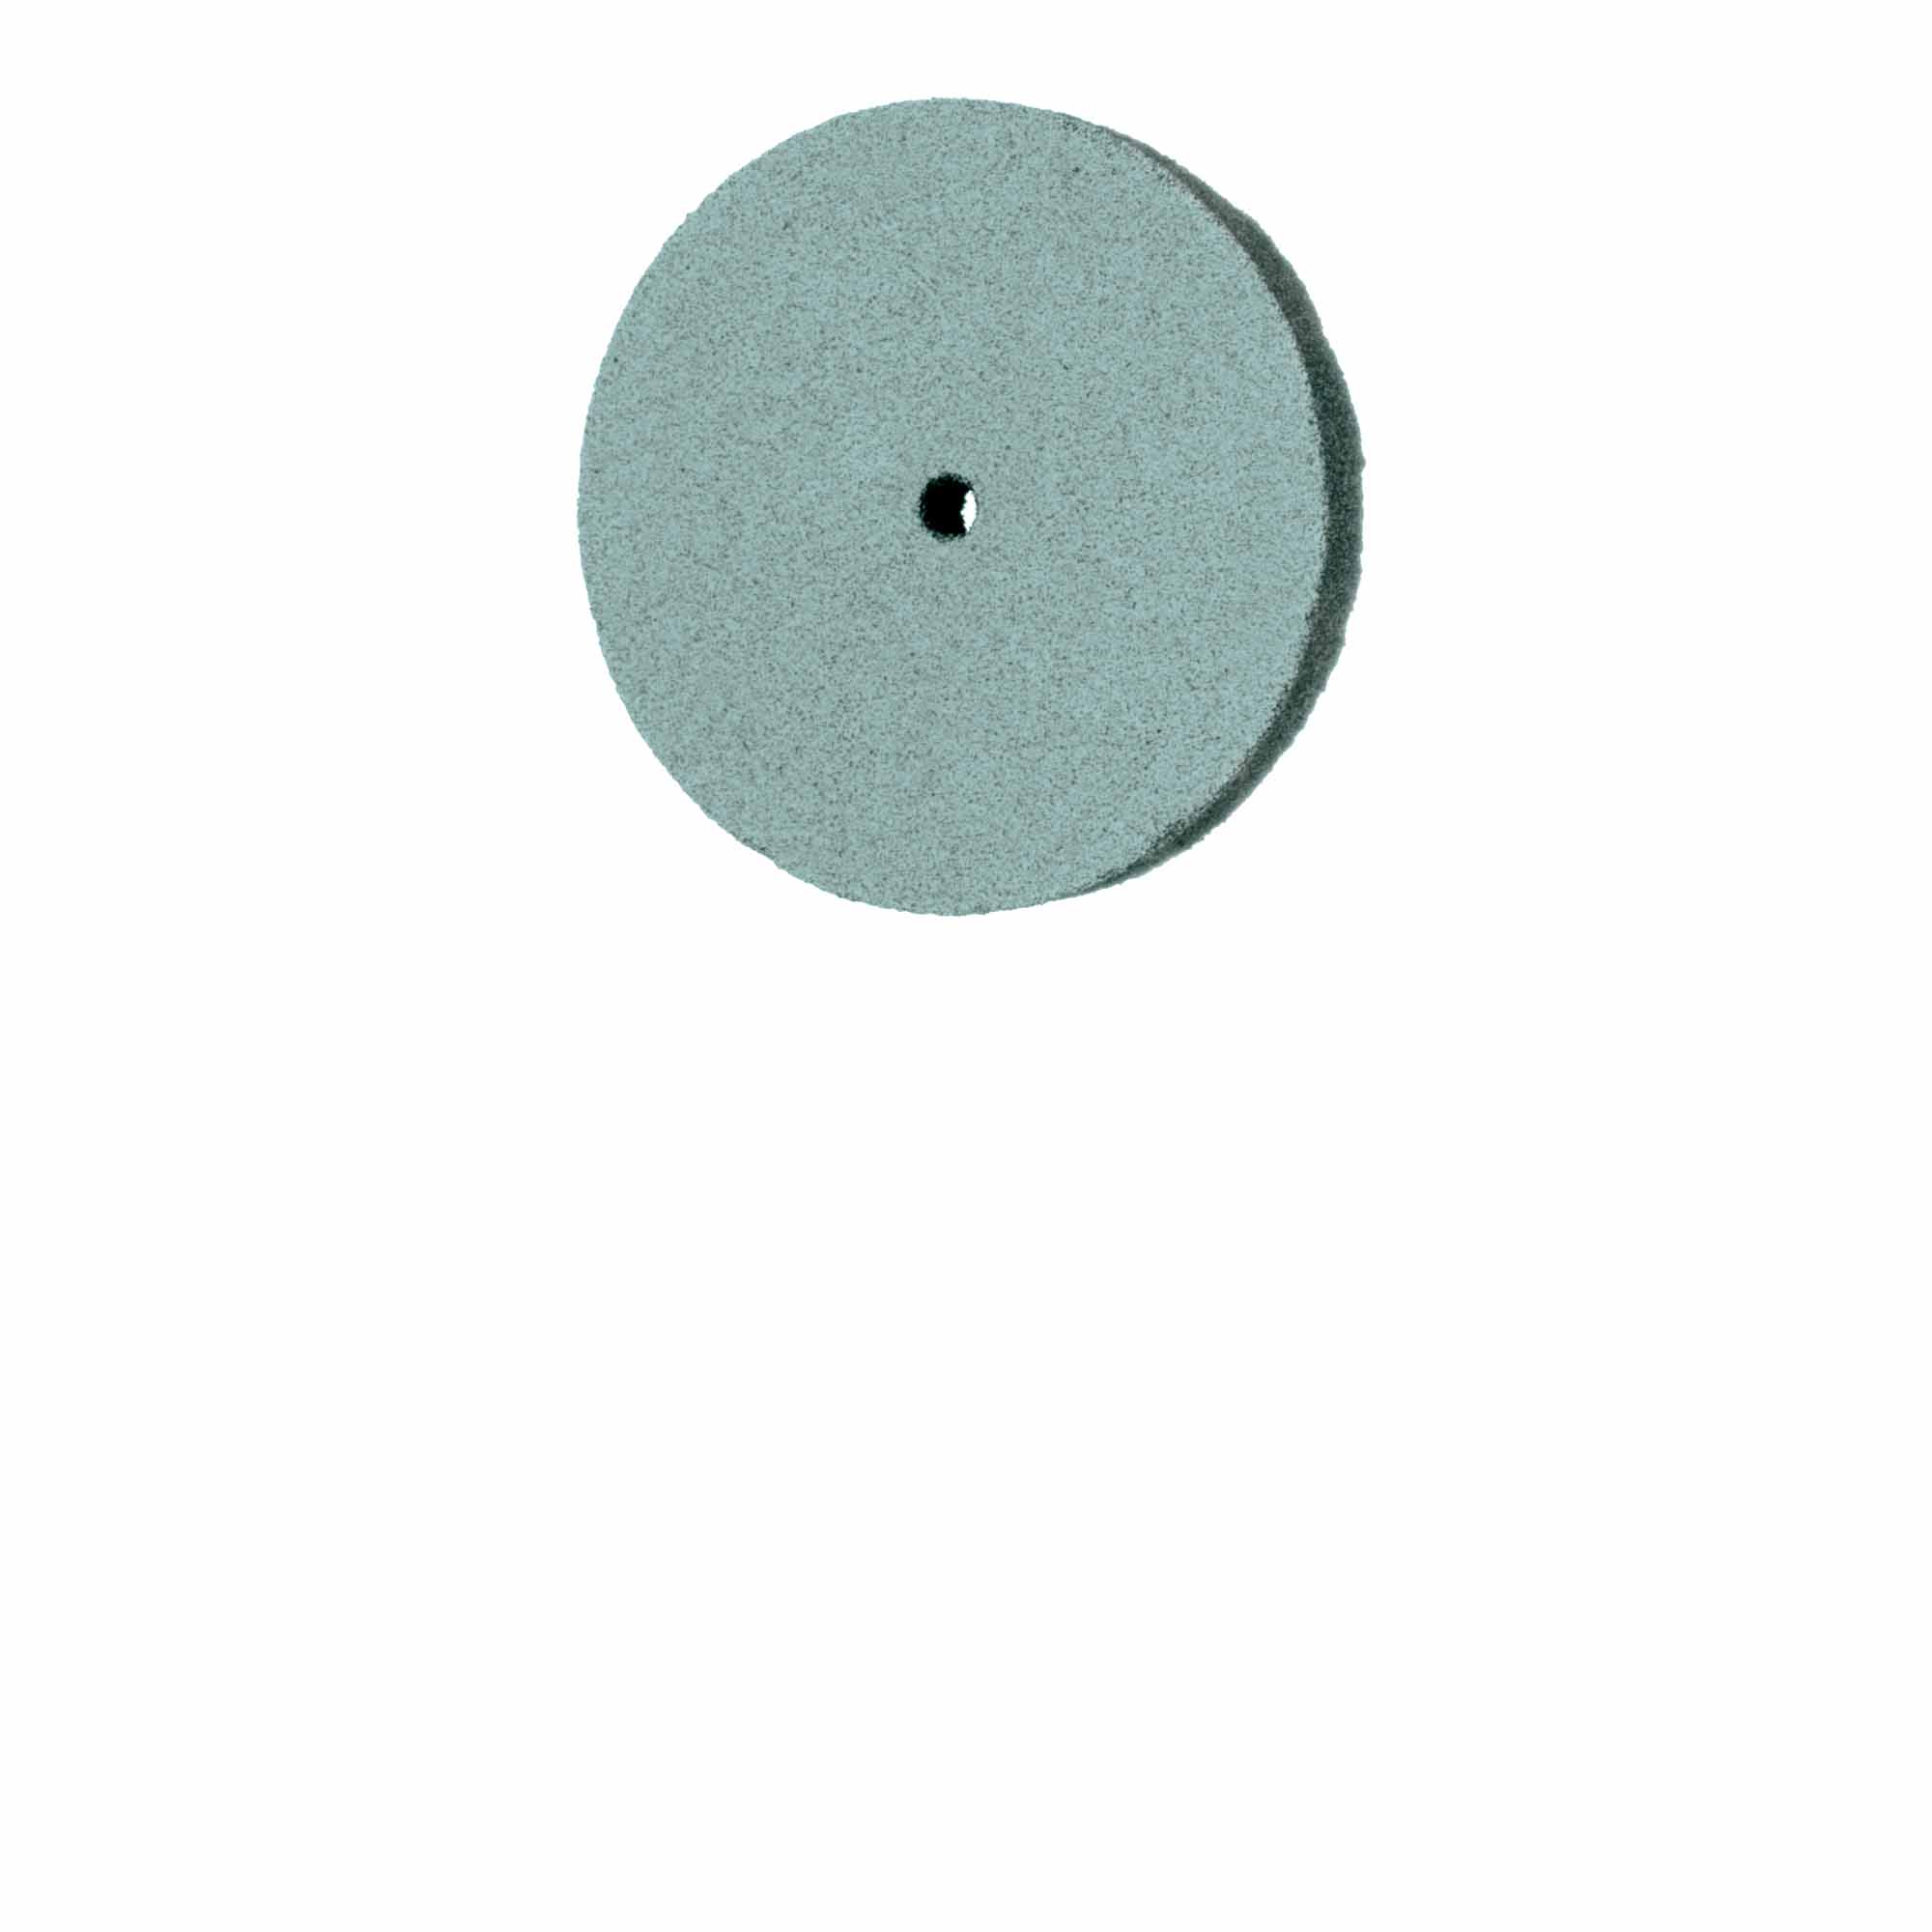 9617H-220-UNM-GRN Polisher, Porcelain Polishers for Ceramics, Light Green, Wheel, 22mm Ø, Polishing, UNM